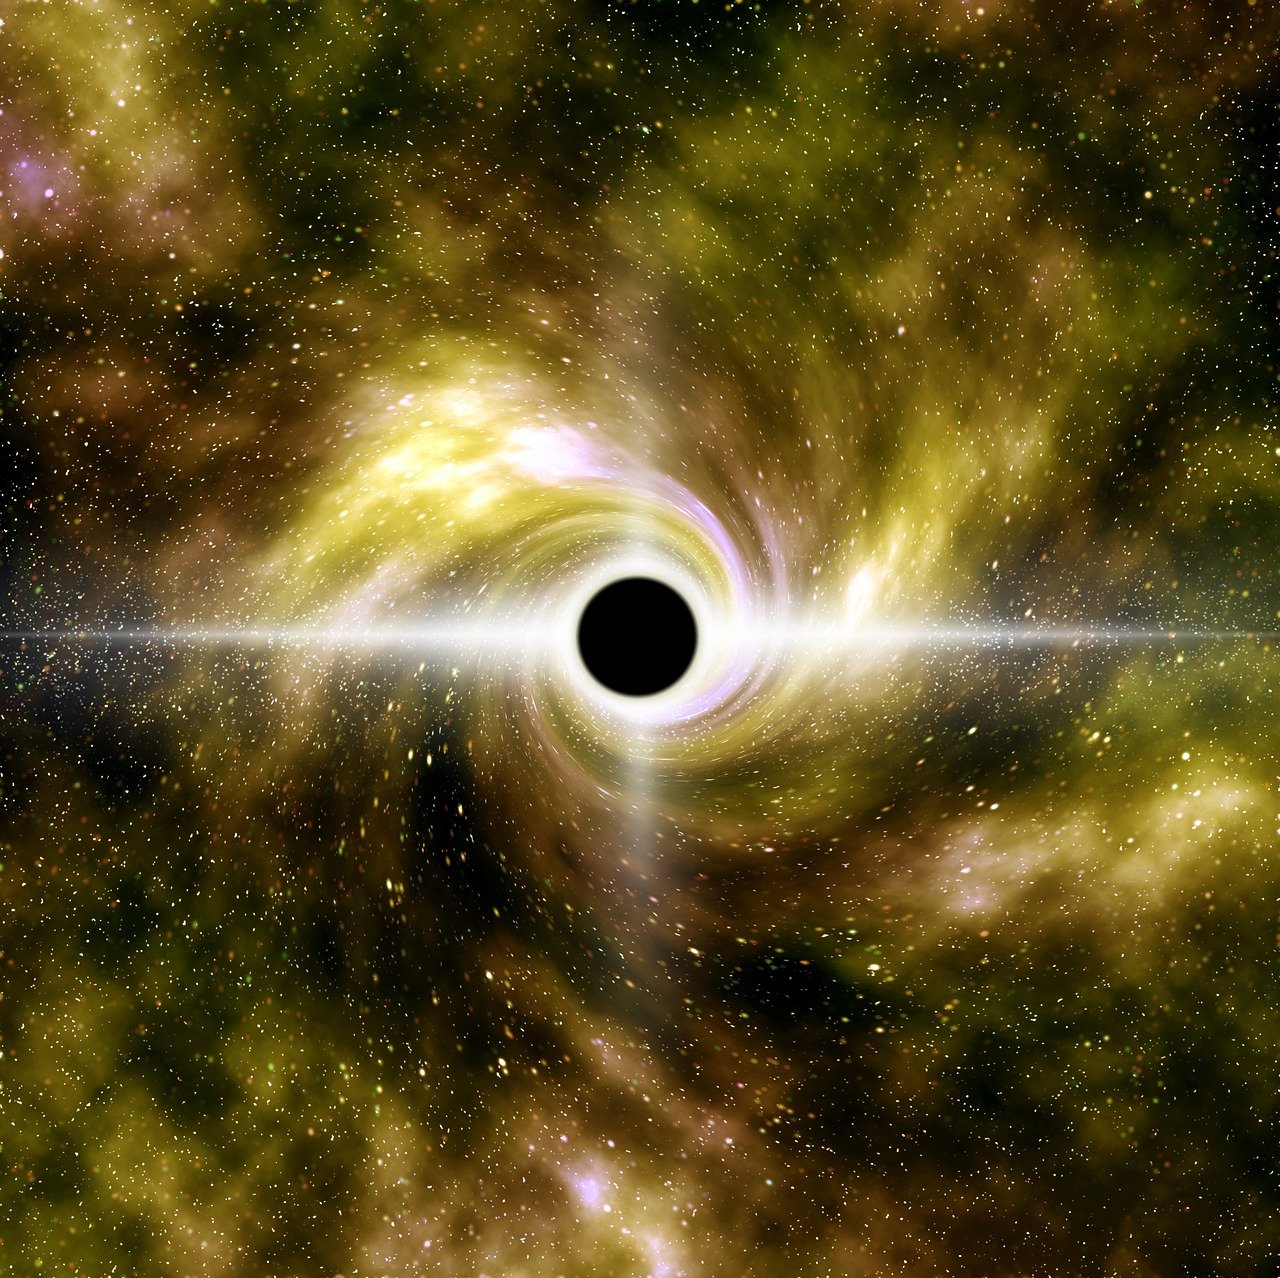 Are black holes dangerous?